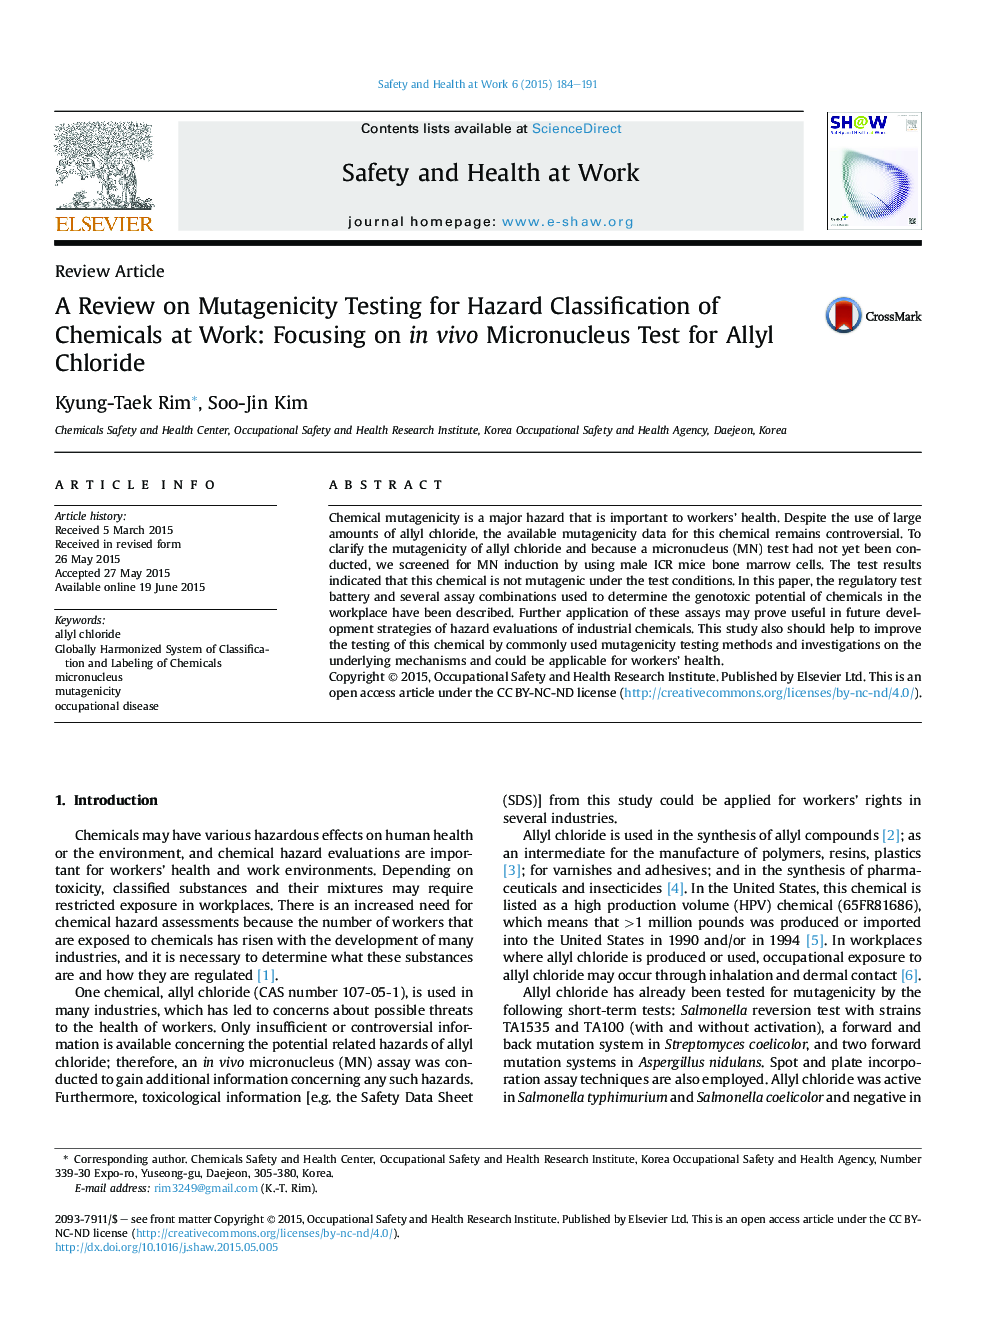 یک بررسی در مورد آزمایش موتاژنیک برای طبقه بندی خطر برای مواد شیمیایی در محل کار: تمرکز بر آزمایش میکرونی هسته در شرایط آزمایشگاهی برای کلریت آللی